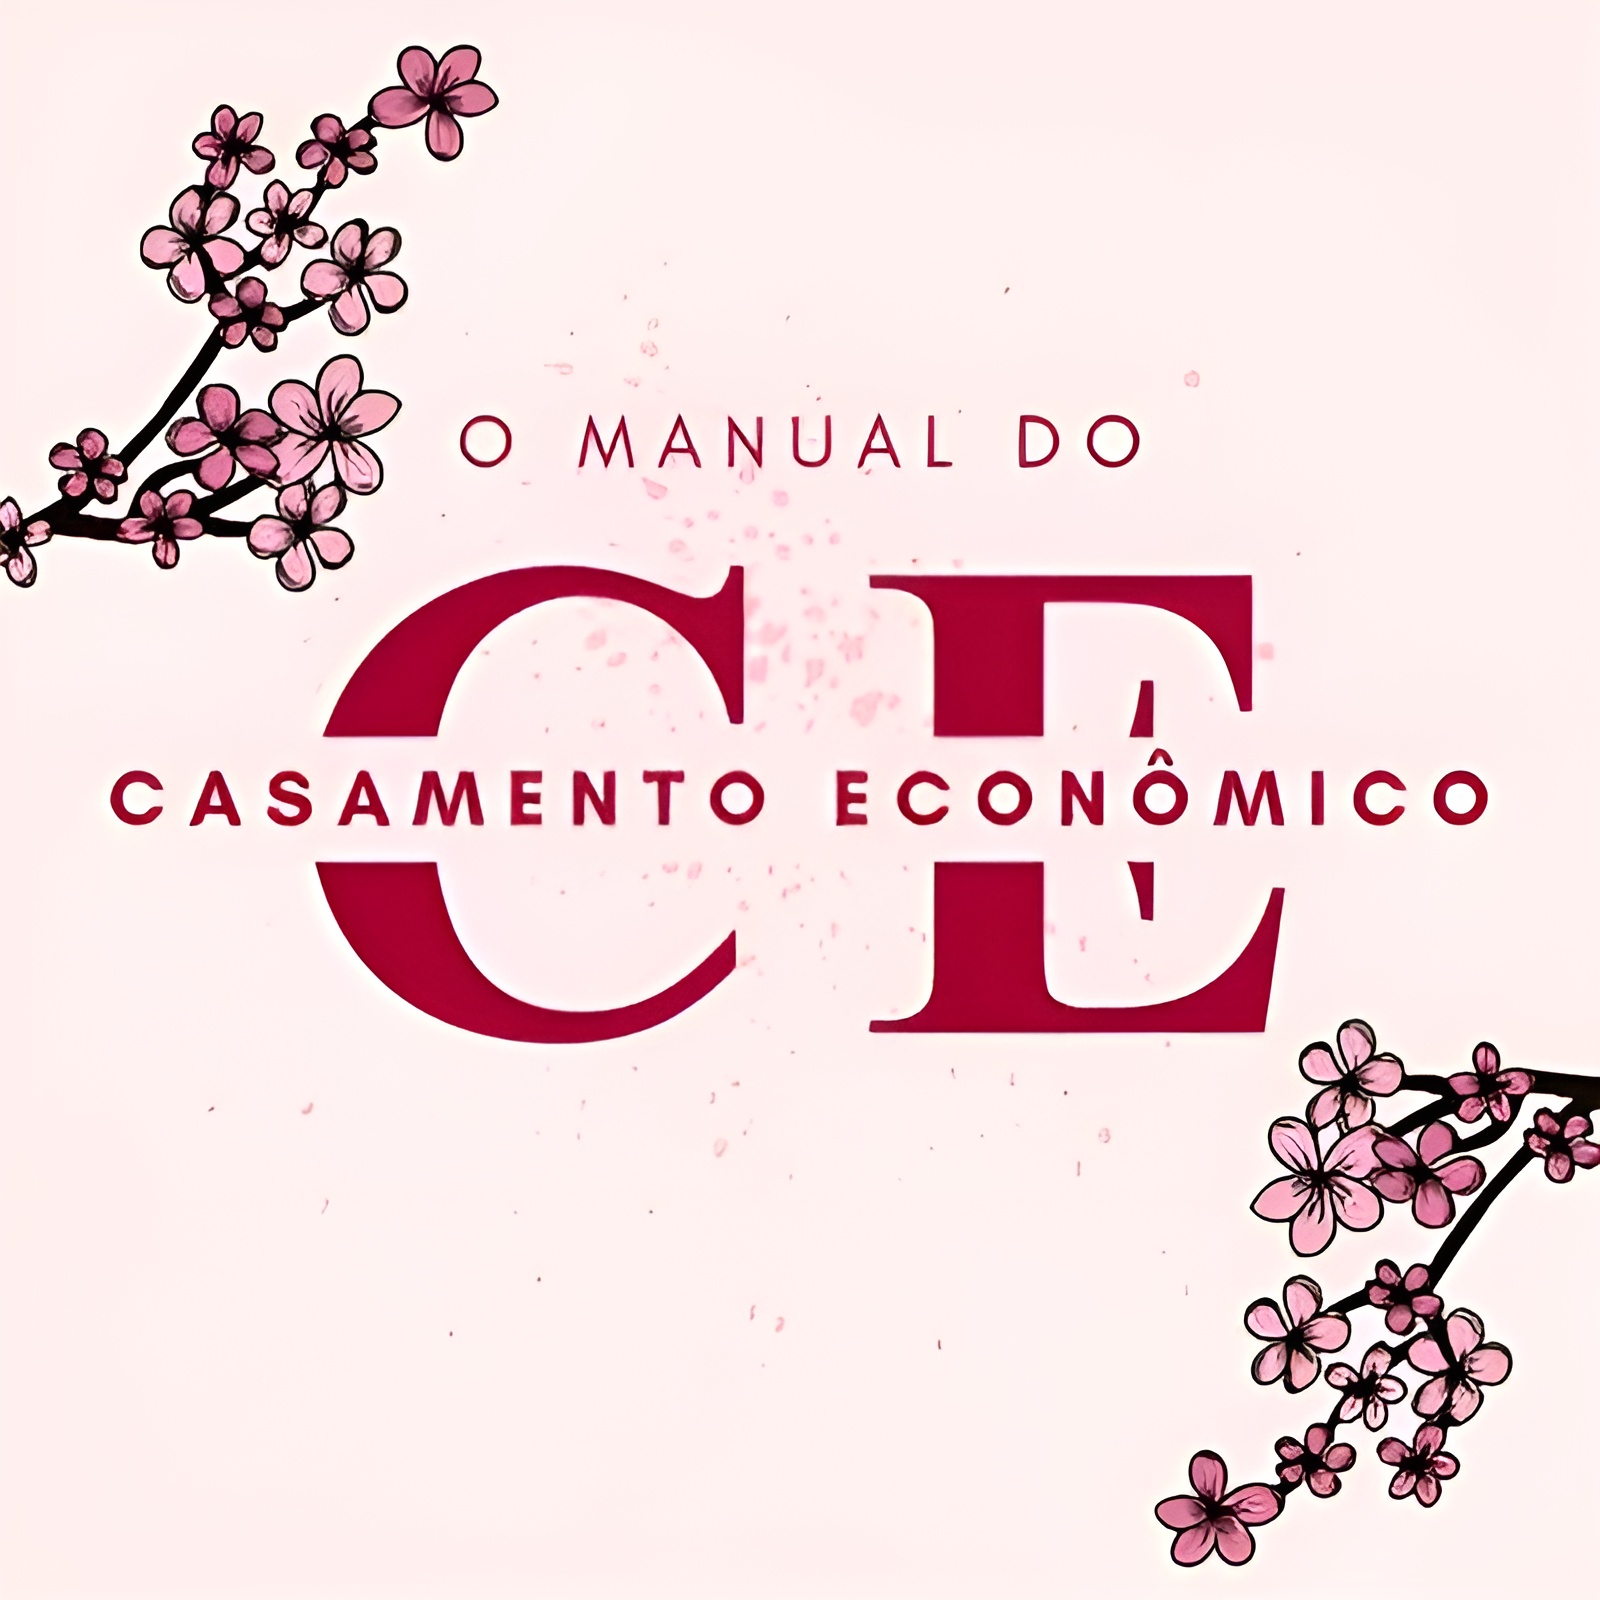 Imagem de divulgação do Manual do Casamento Econômico, da Angela Santos